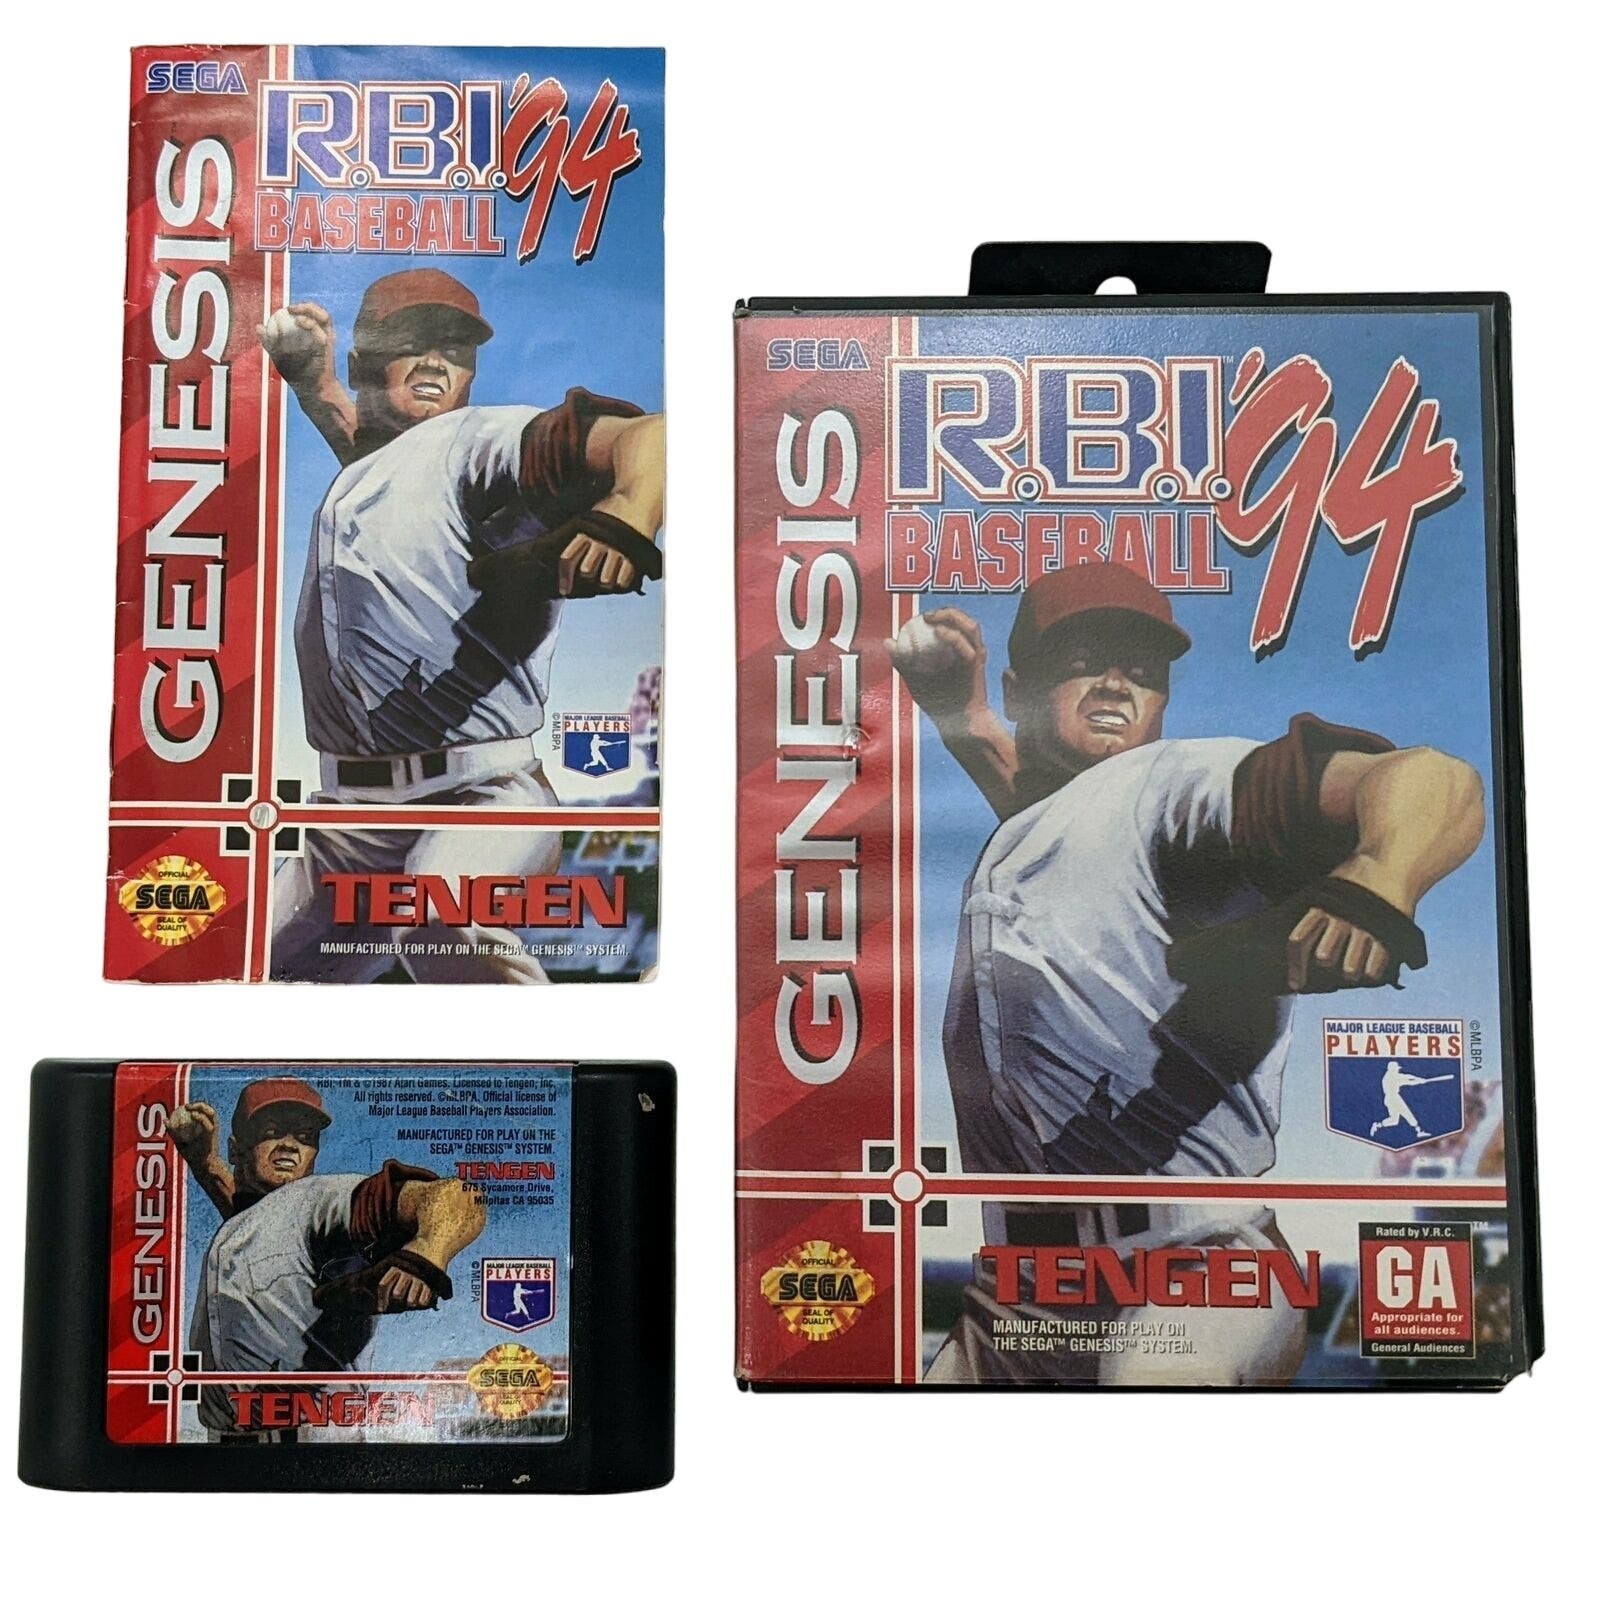 Vintage RBI Baseball 94 Sega Genesis Game CIB Tengen 1994 Case Manual Cartridge - $12.86